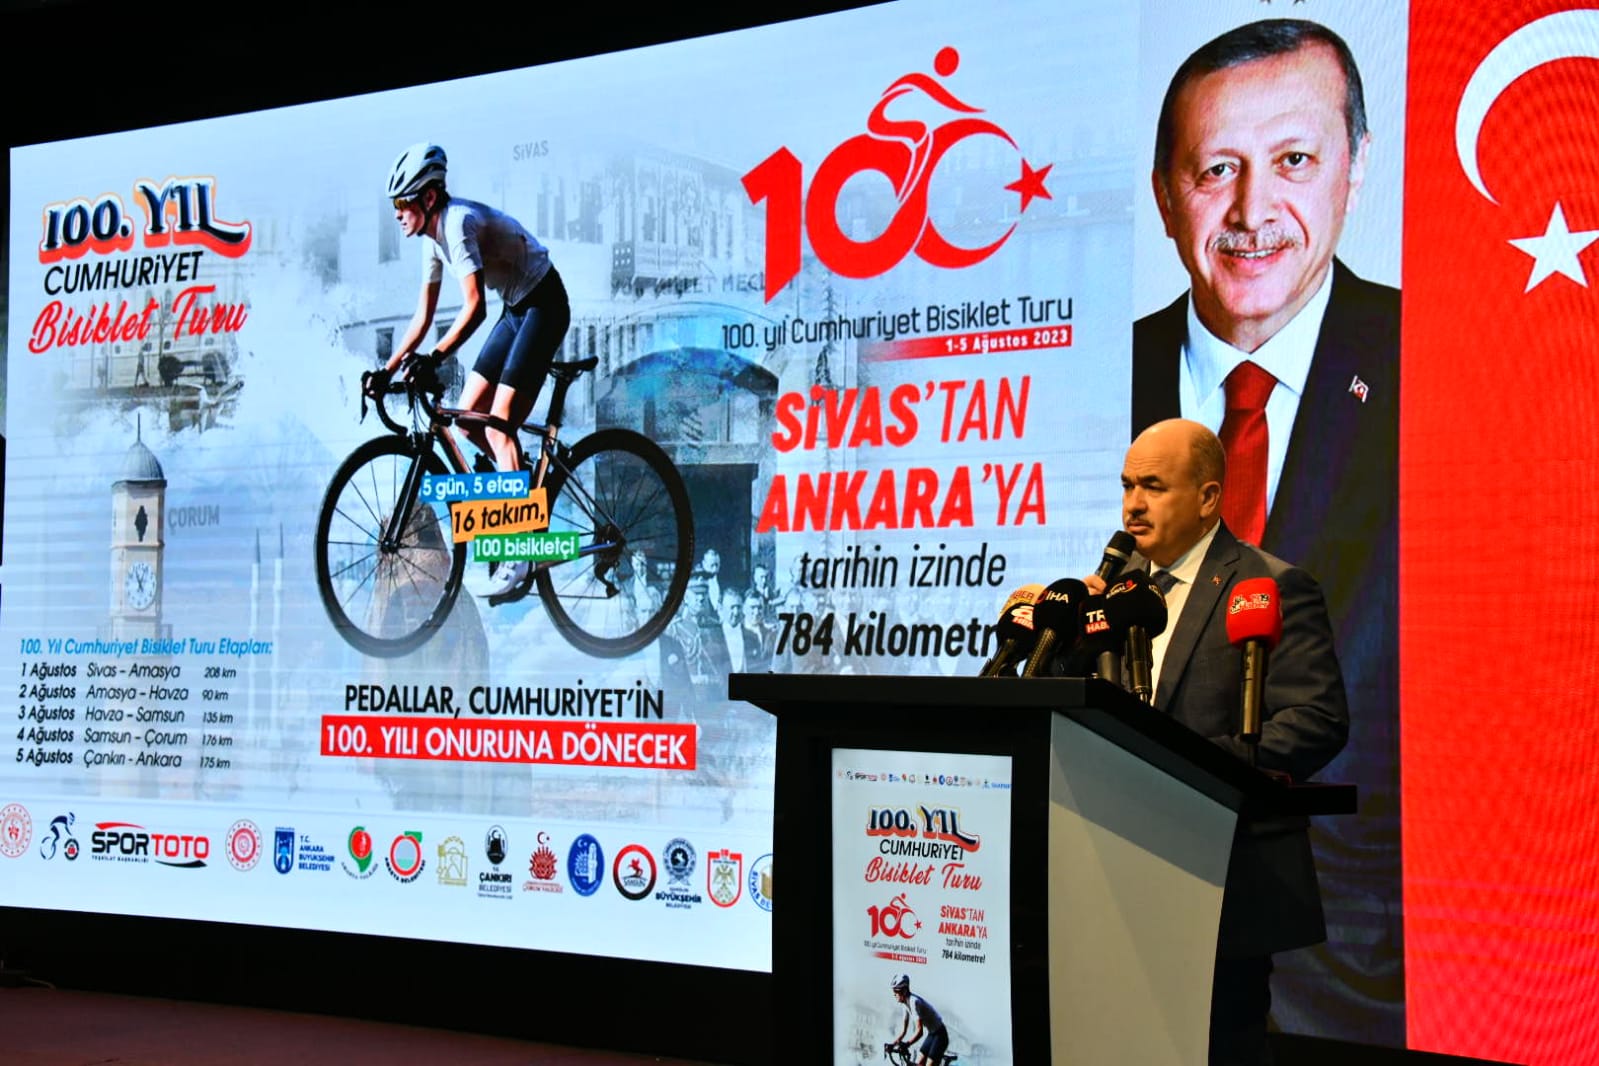 100. Yıl Cumhuriyet Bisiklet Turu’nu